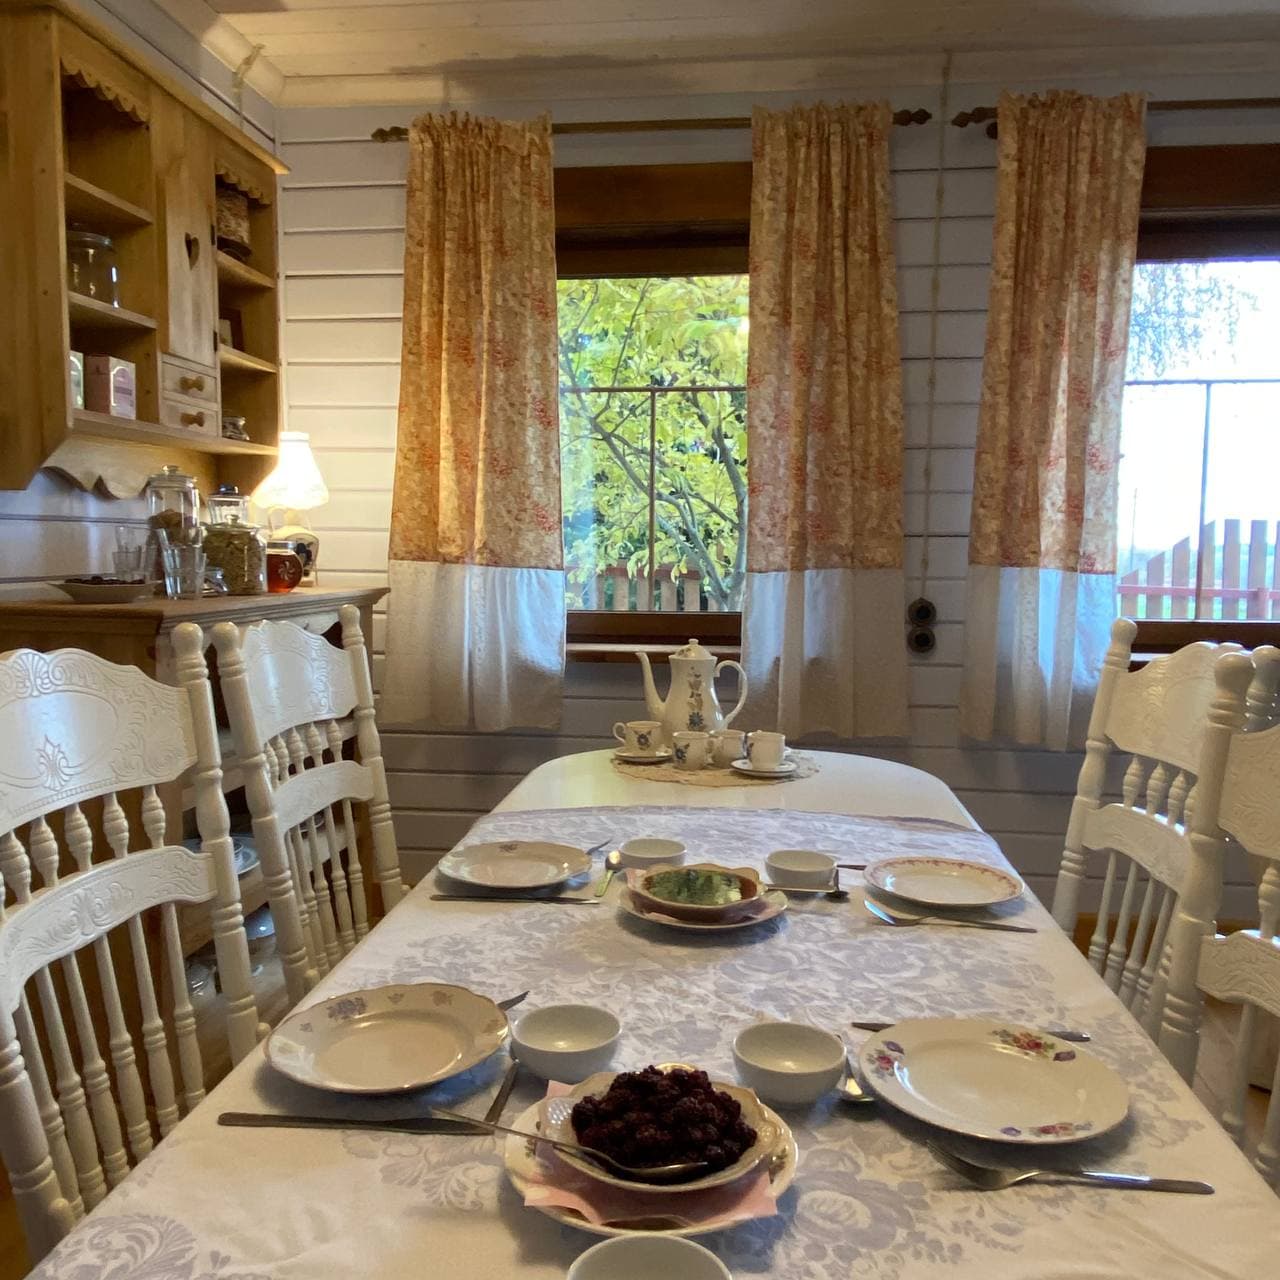 Изба — общее пространство с гостиной, кухней, столовой и террасой с видом на сад